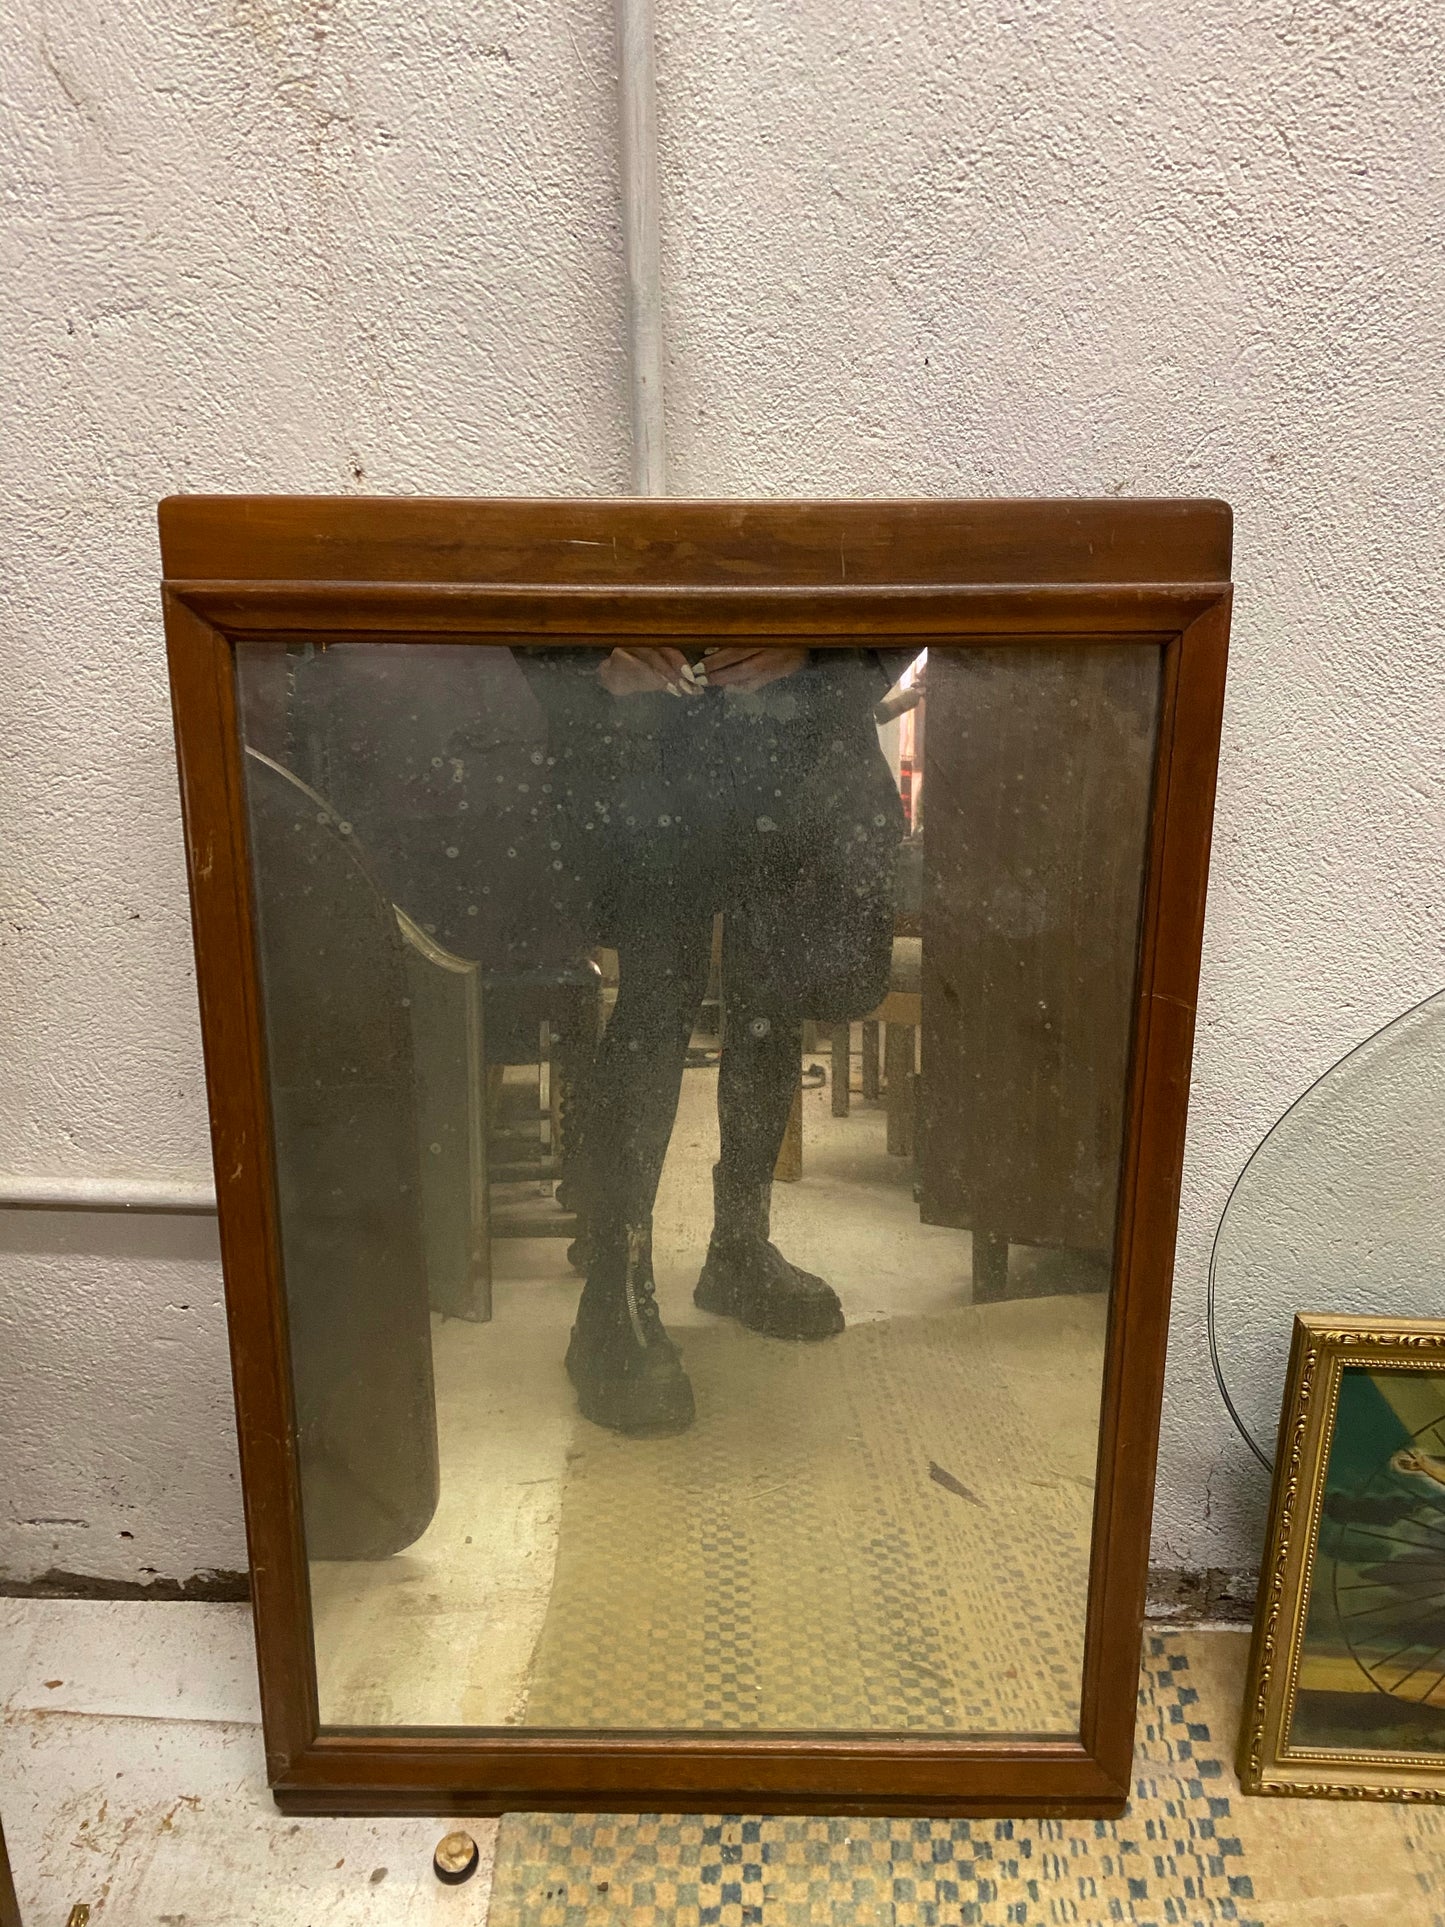 Wood framed Mirror 22x33” tall